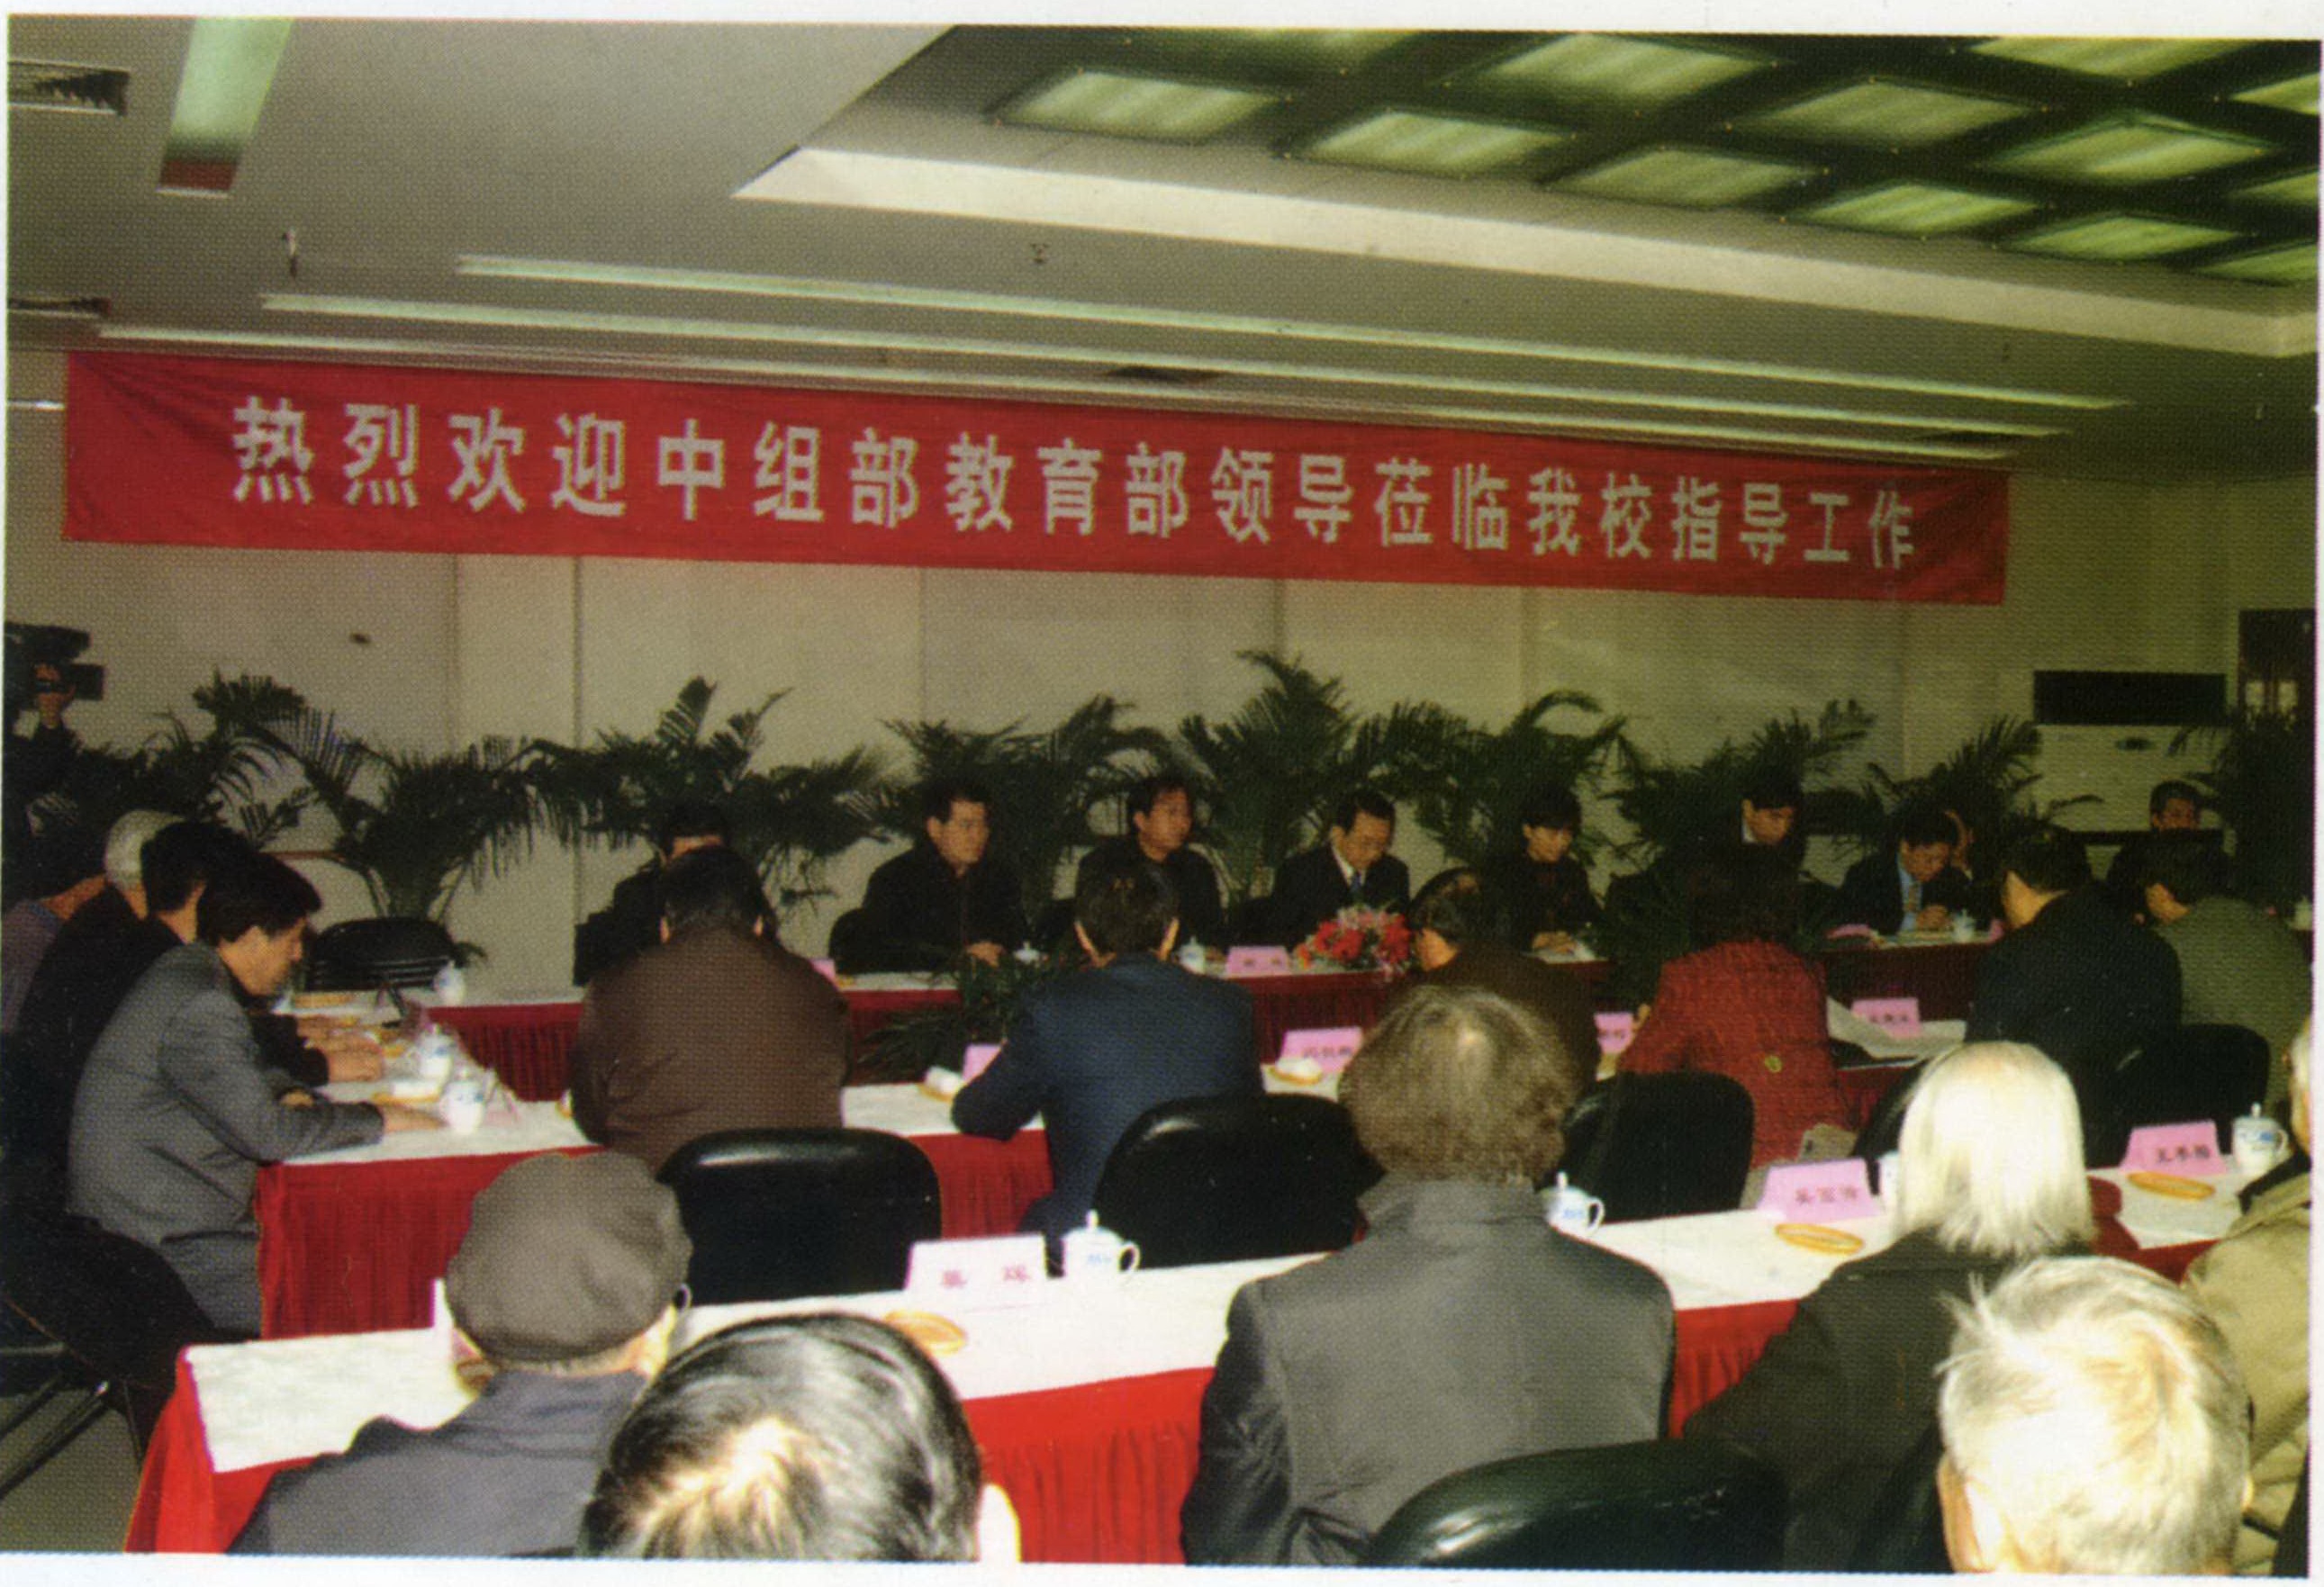 2006年2月28日中组部等领导来学校传达中央对西迁老同志的慰问.jpg